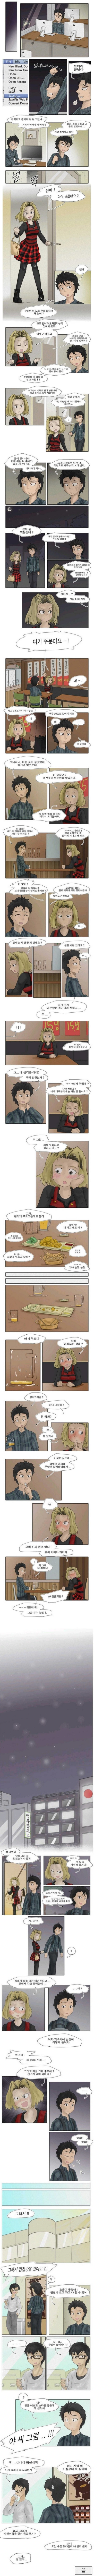 후배가 선배 좋아하는 만화.Manhwa.jpg